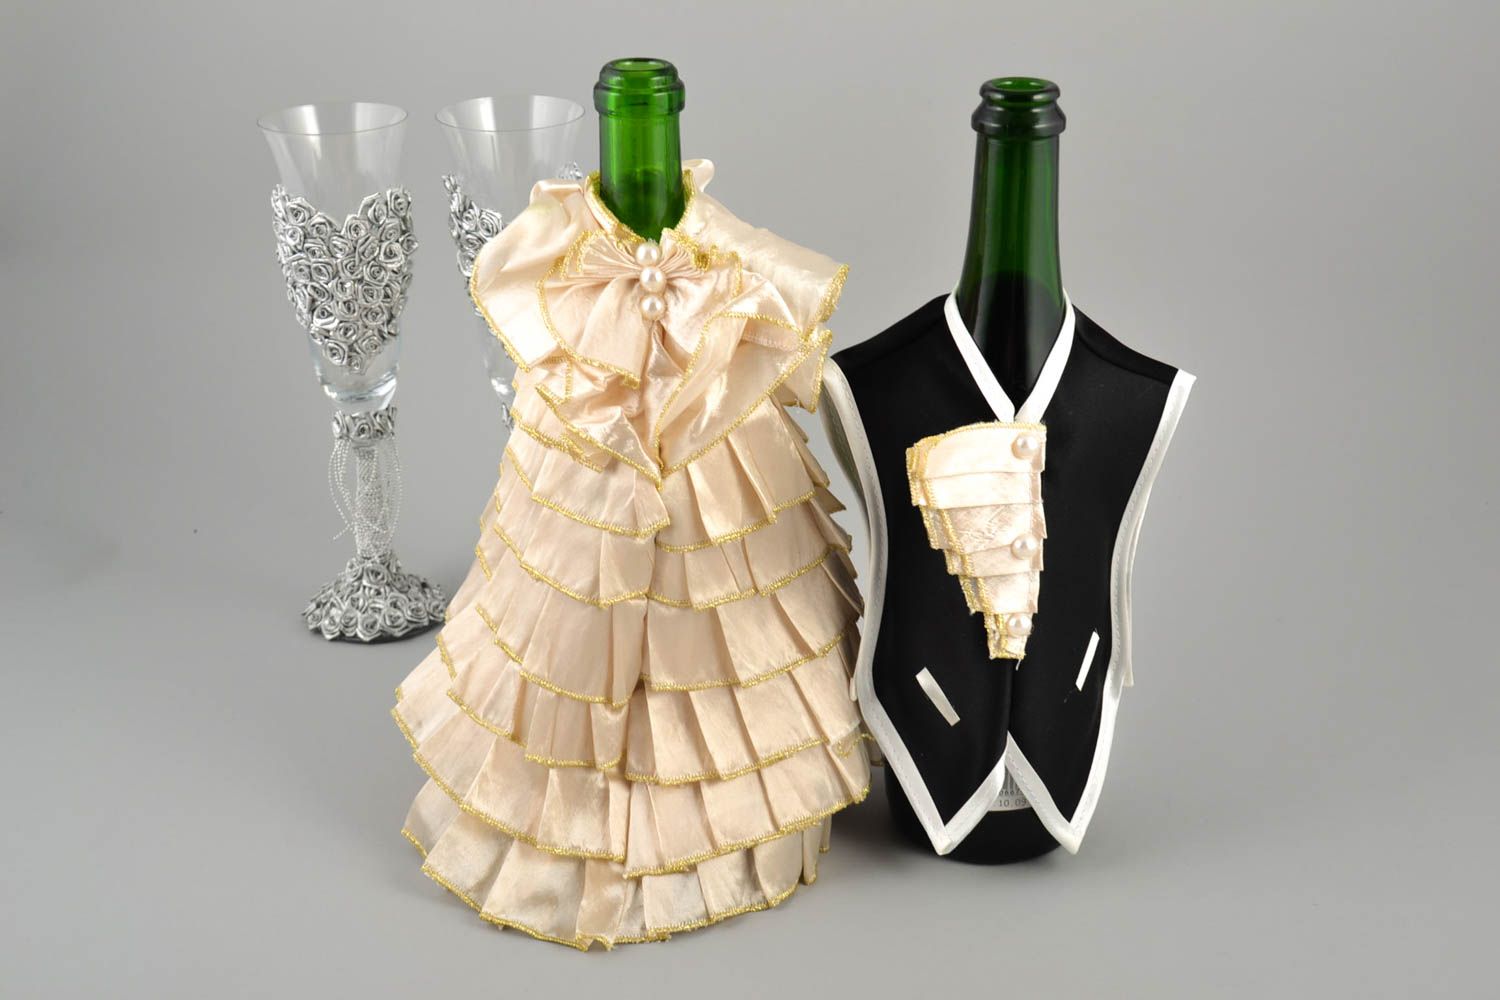 Аксессуары для свадьбы handmade украшения для свадебного стола чехлы для бутылок фото 1